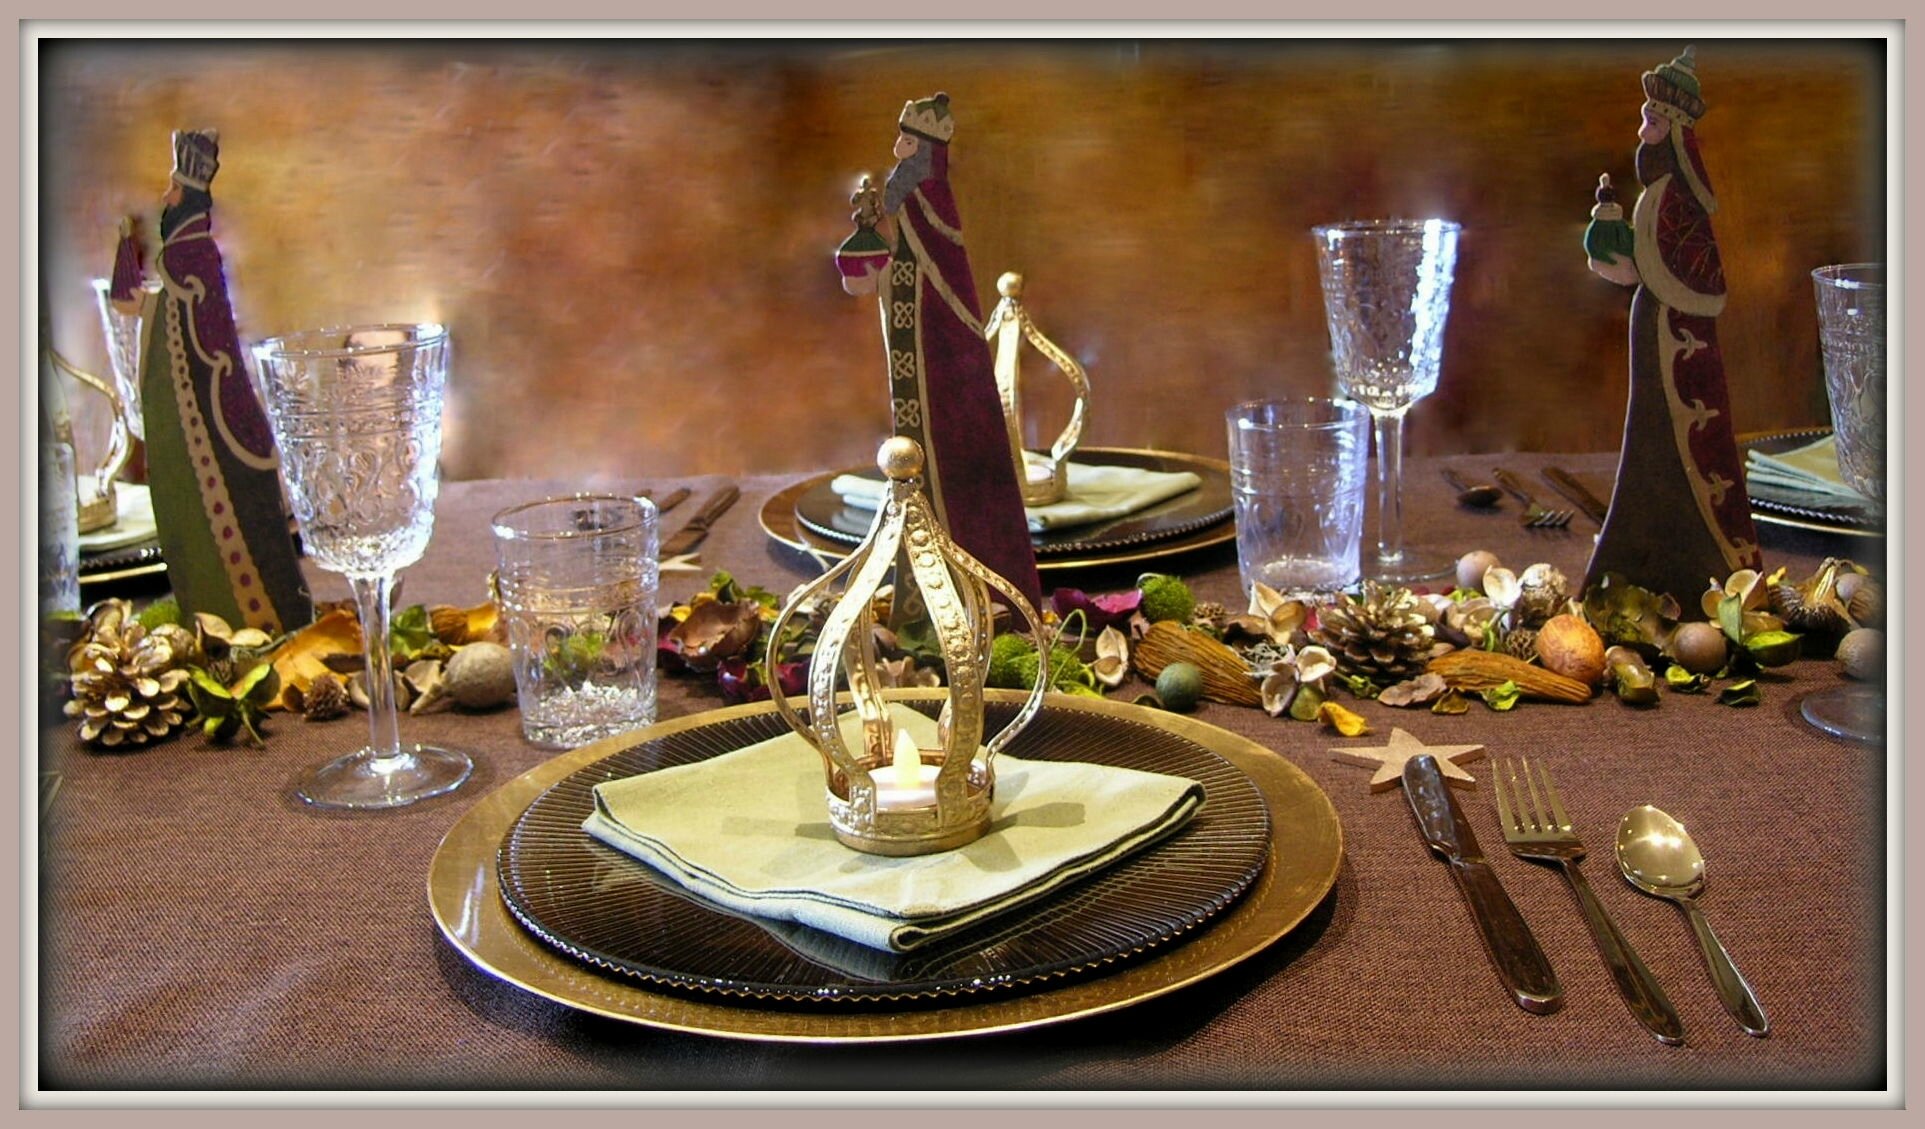 Idées de décorations de table pour l'Epiphanie, la fête des rois - Recréer  le thème de la fête des rois à la maison.…